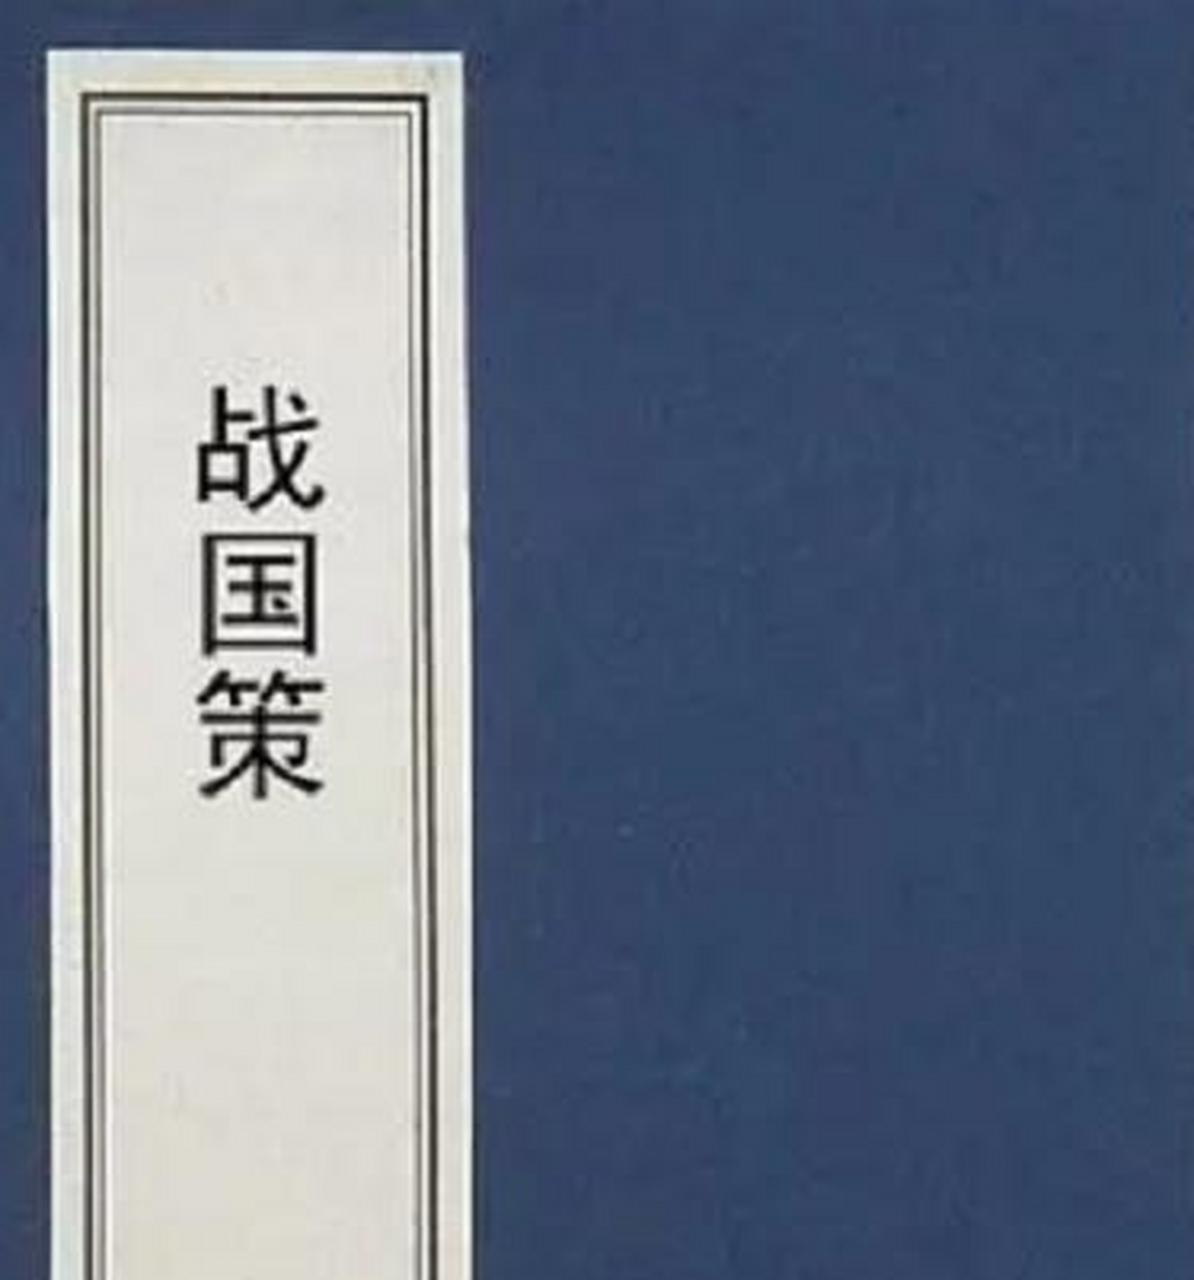 《战国策》是西汉刘向编写的史书,全书共分三十三卷,分十二国的策论